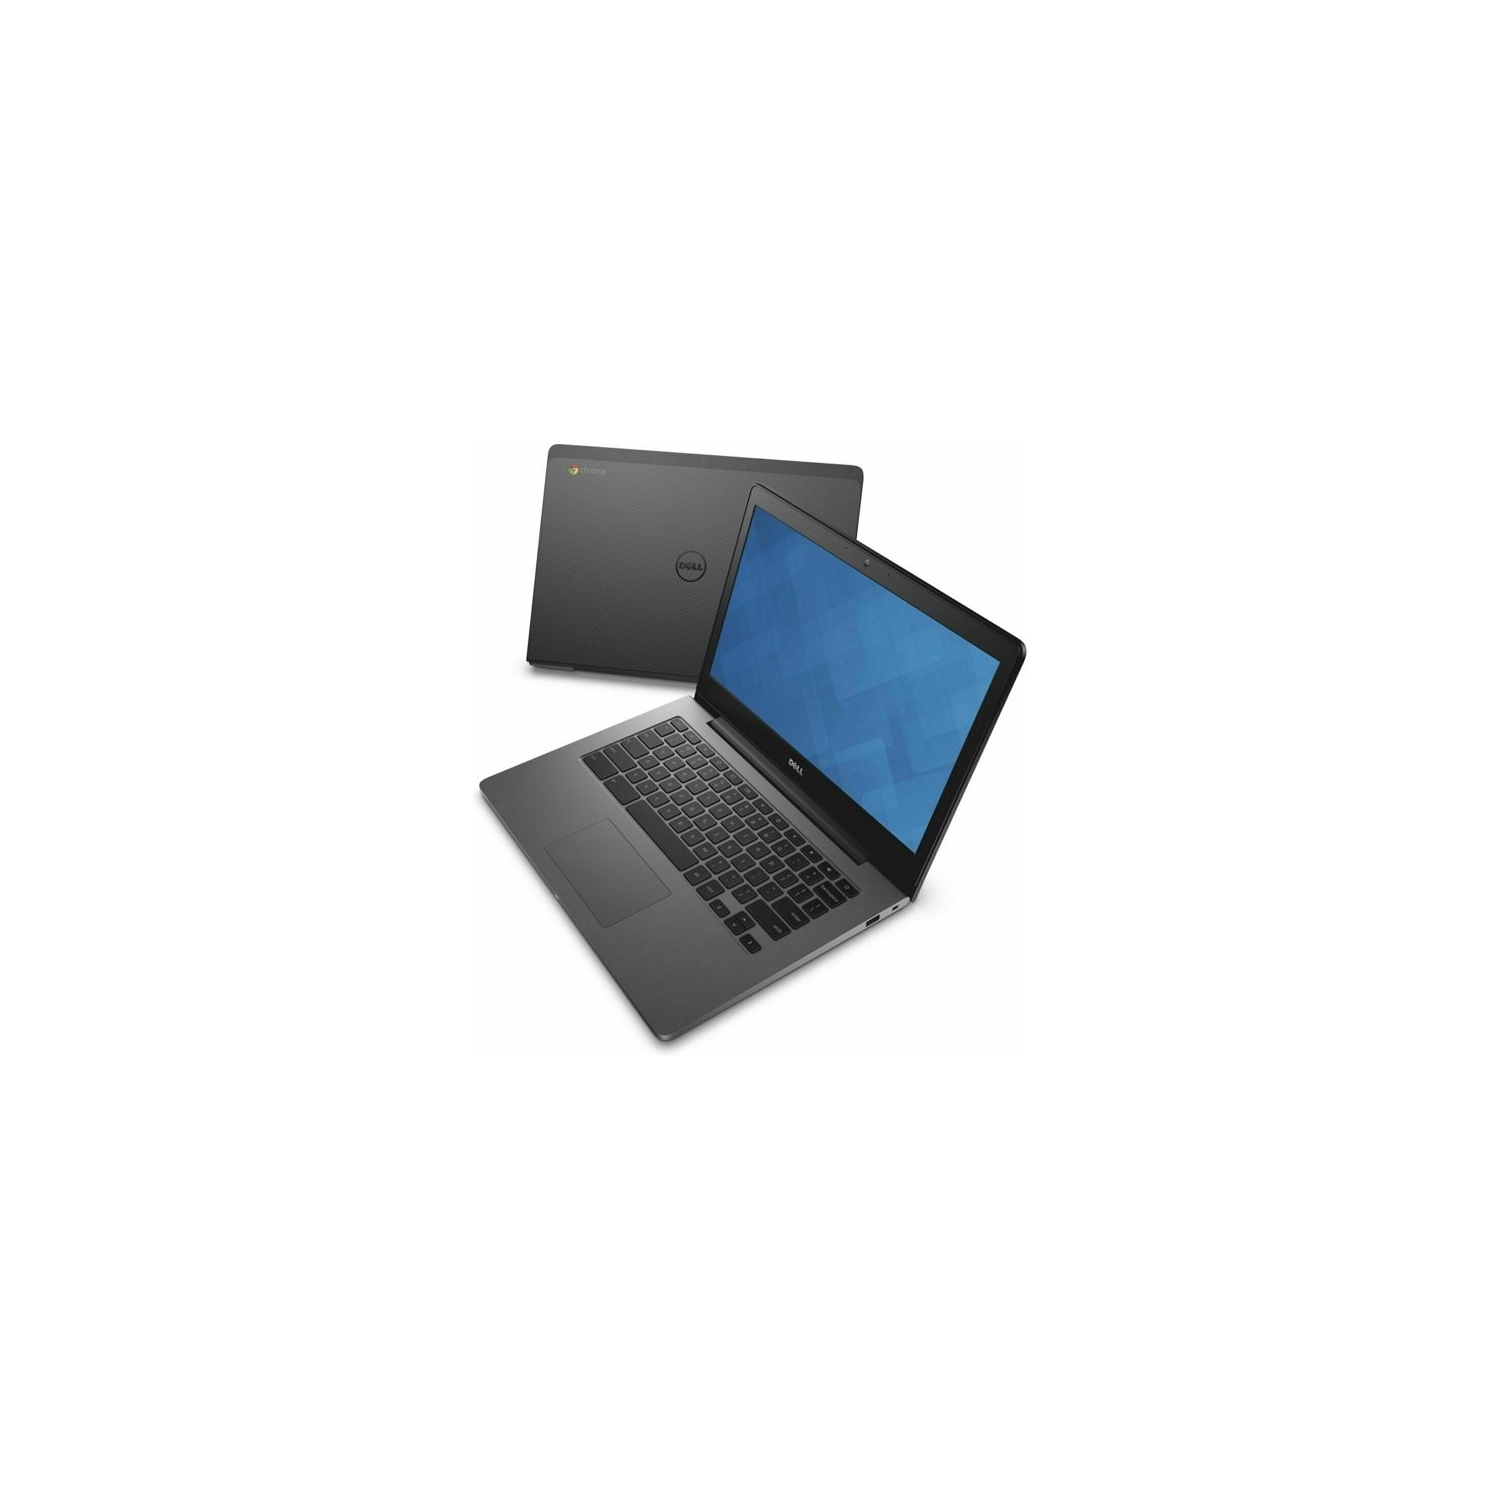 Dell Chromebook 13-7310 Laptop (Intel Celeron 3205U 1.50GHz, 4GB RAM, 16GB SSD, 13.3 inch FHD Display, WIFI, HDMI, Camera, MicroSD Card Reader) - Refurbished